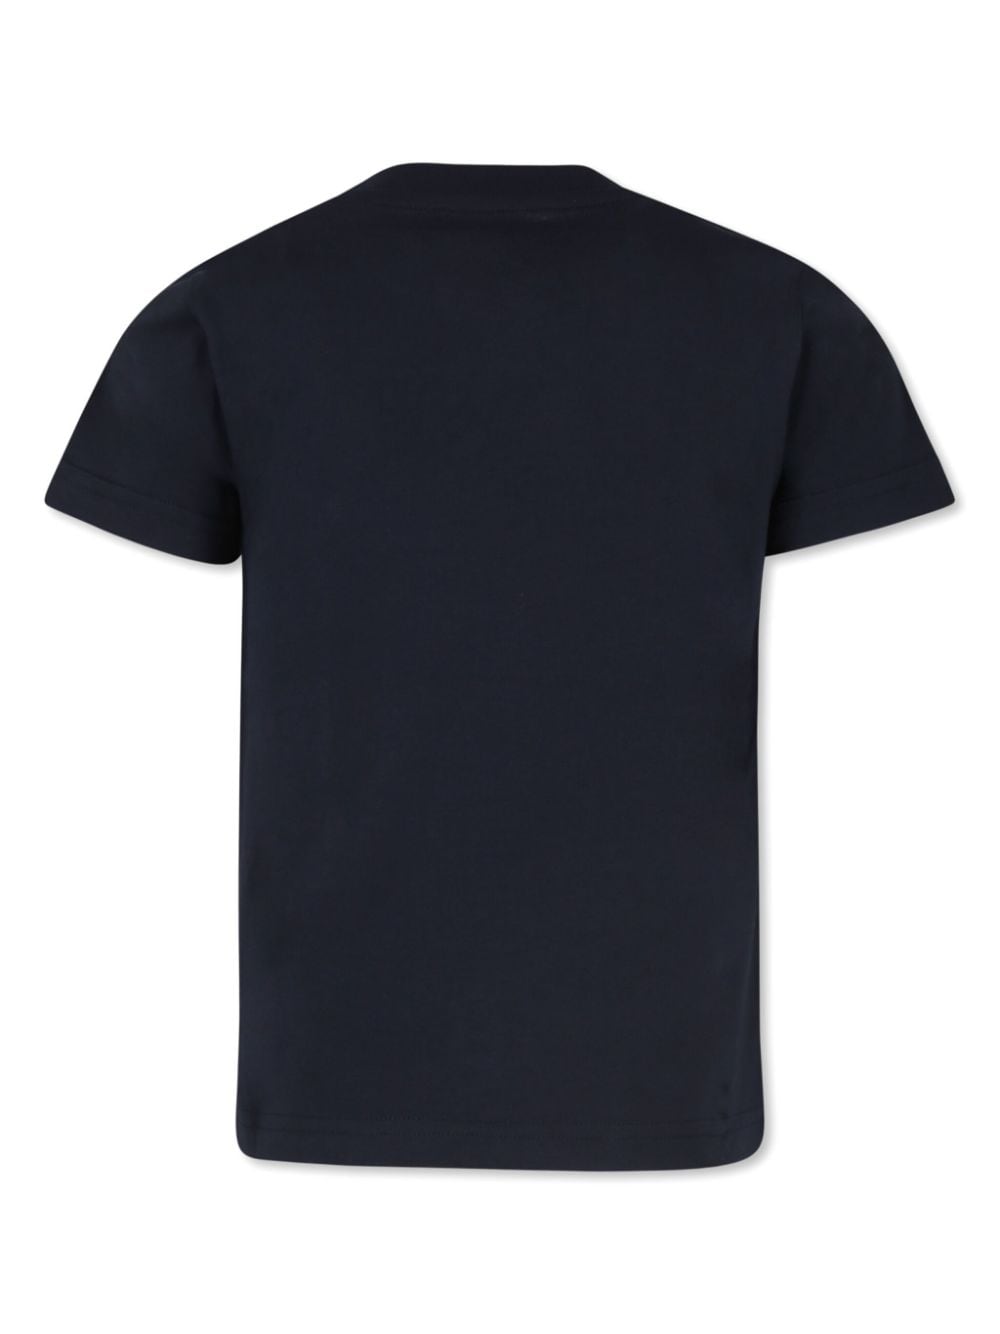 T-shirt per bambino in cotone blu navy